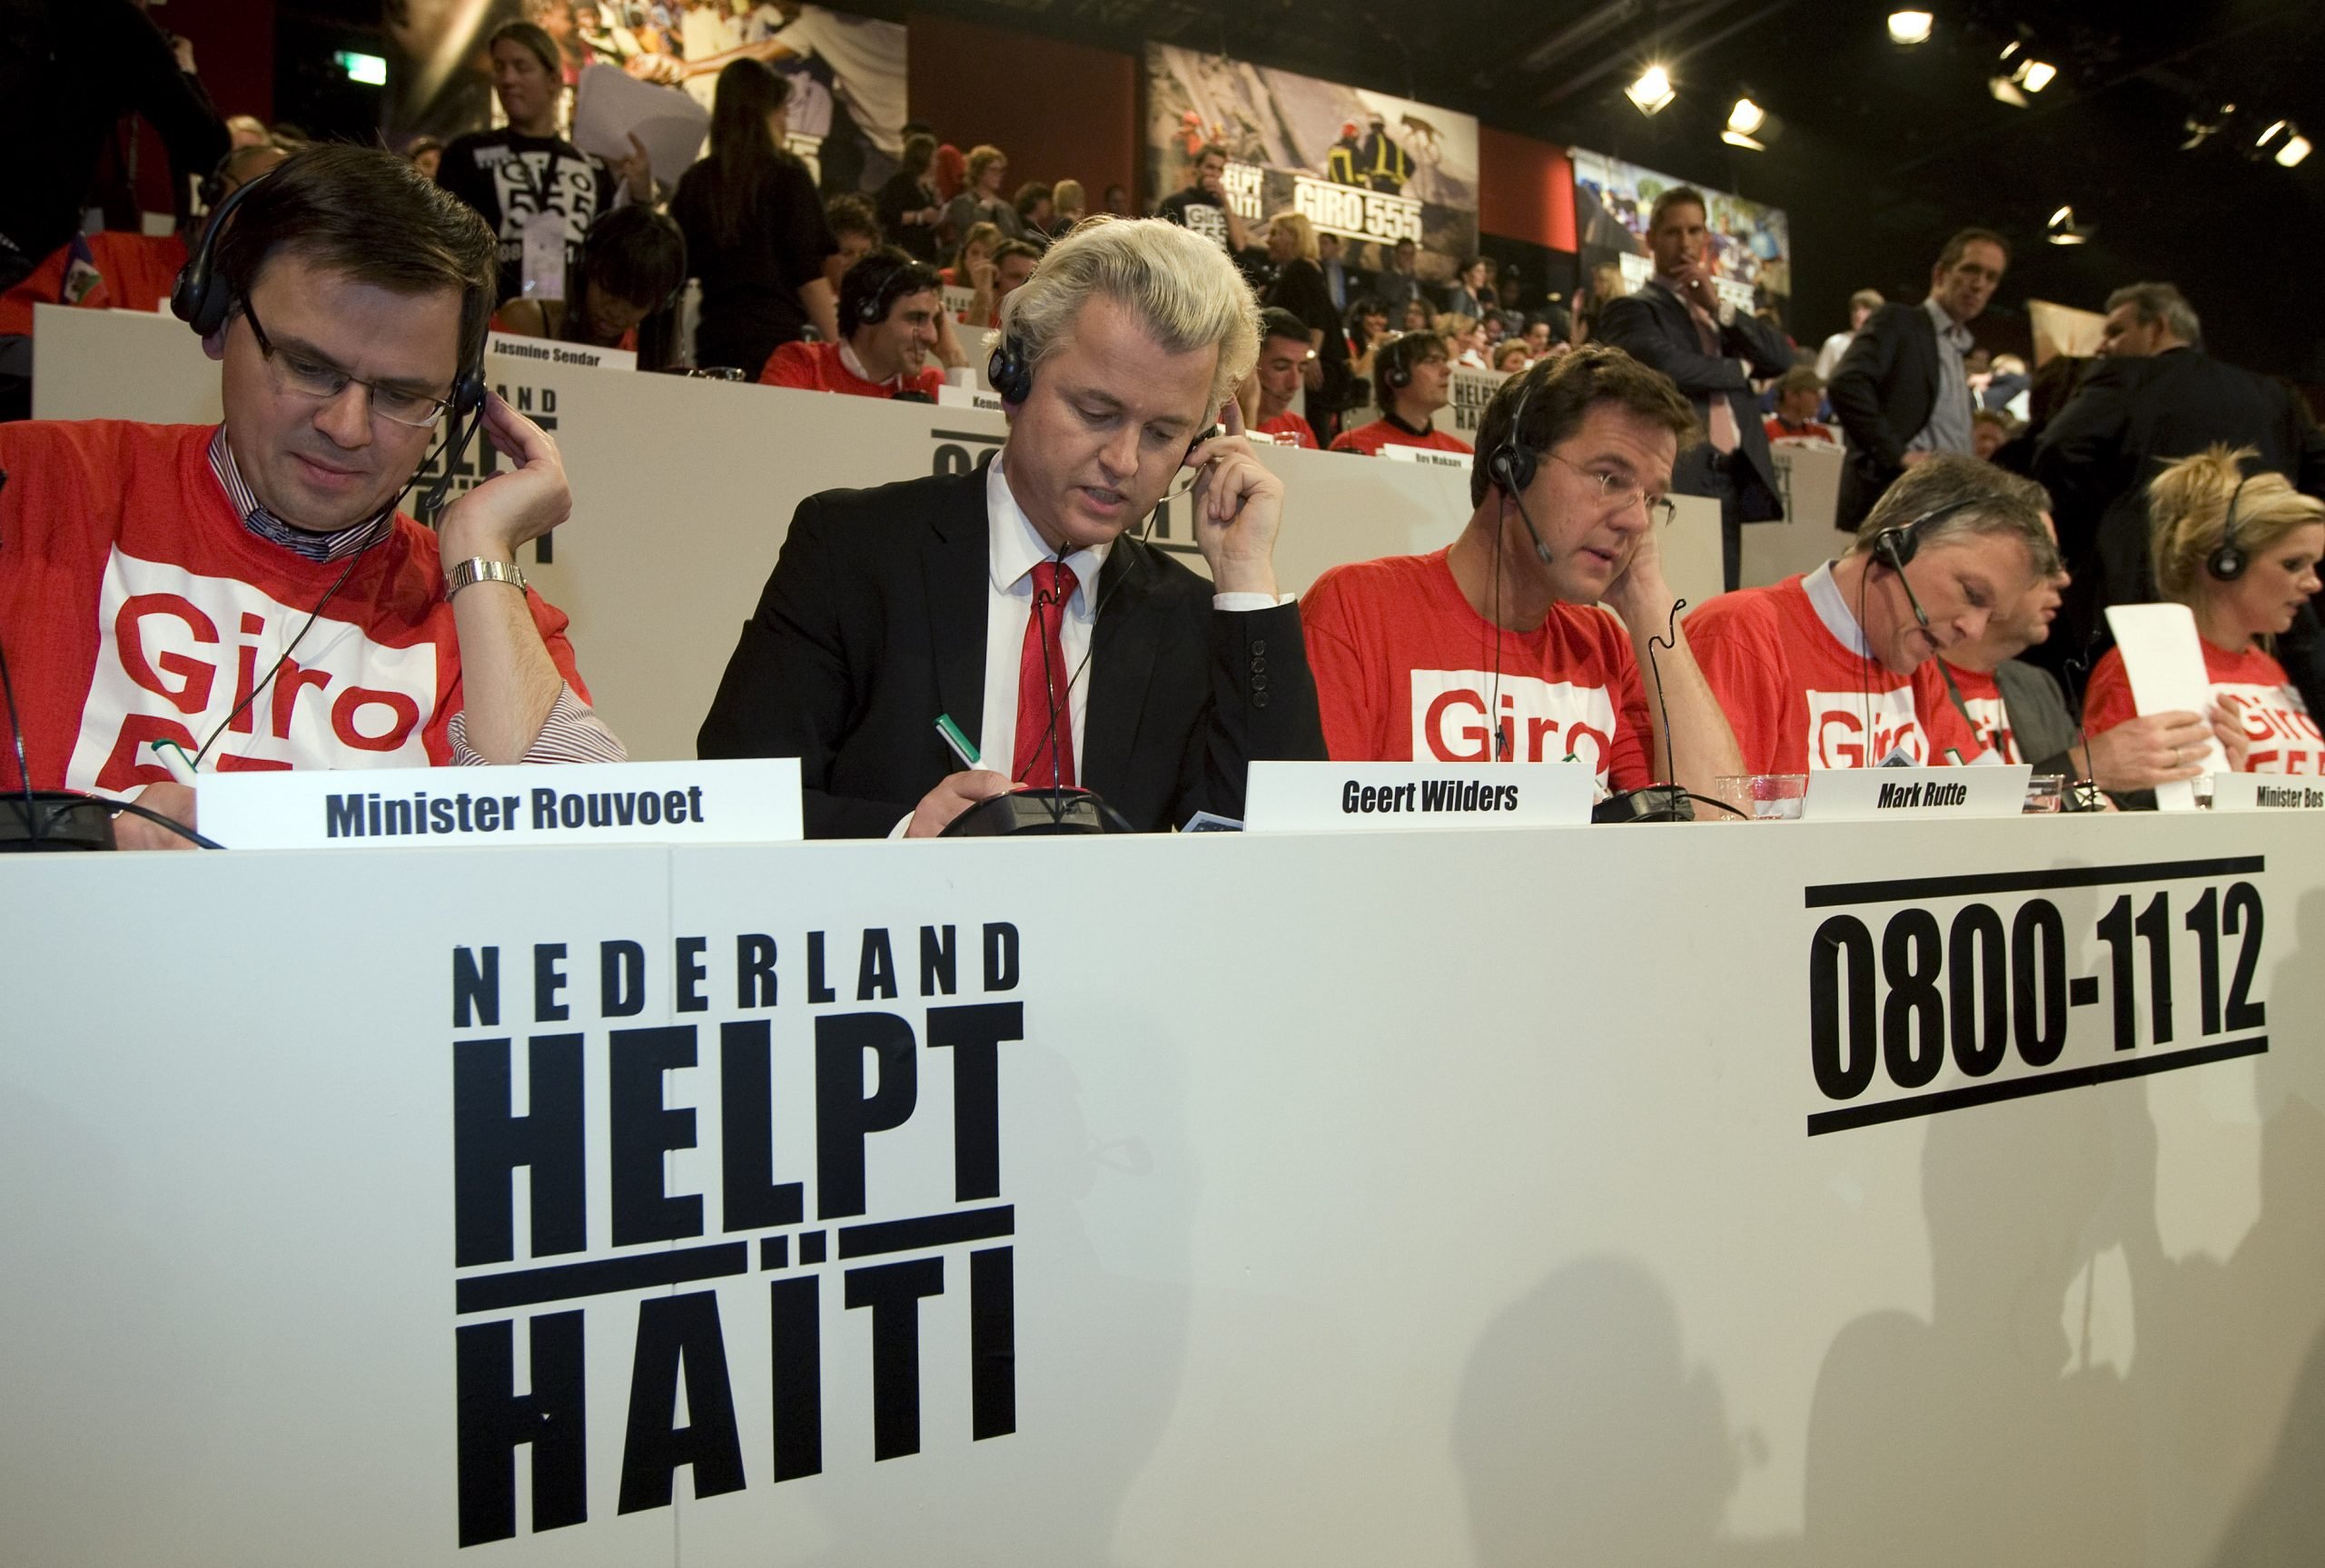 De politici André Rouvoet, Geert Wilders, Mark Rutte en Wouter Bos in het belpanel tijdens hulpactie voor Haïti in 2010. Foto: ANP